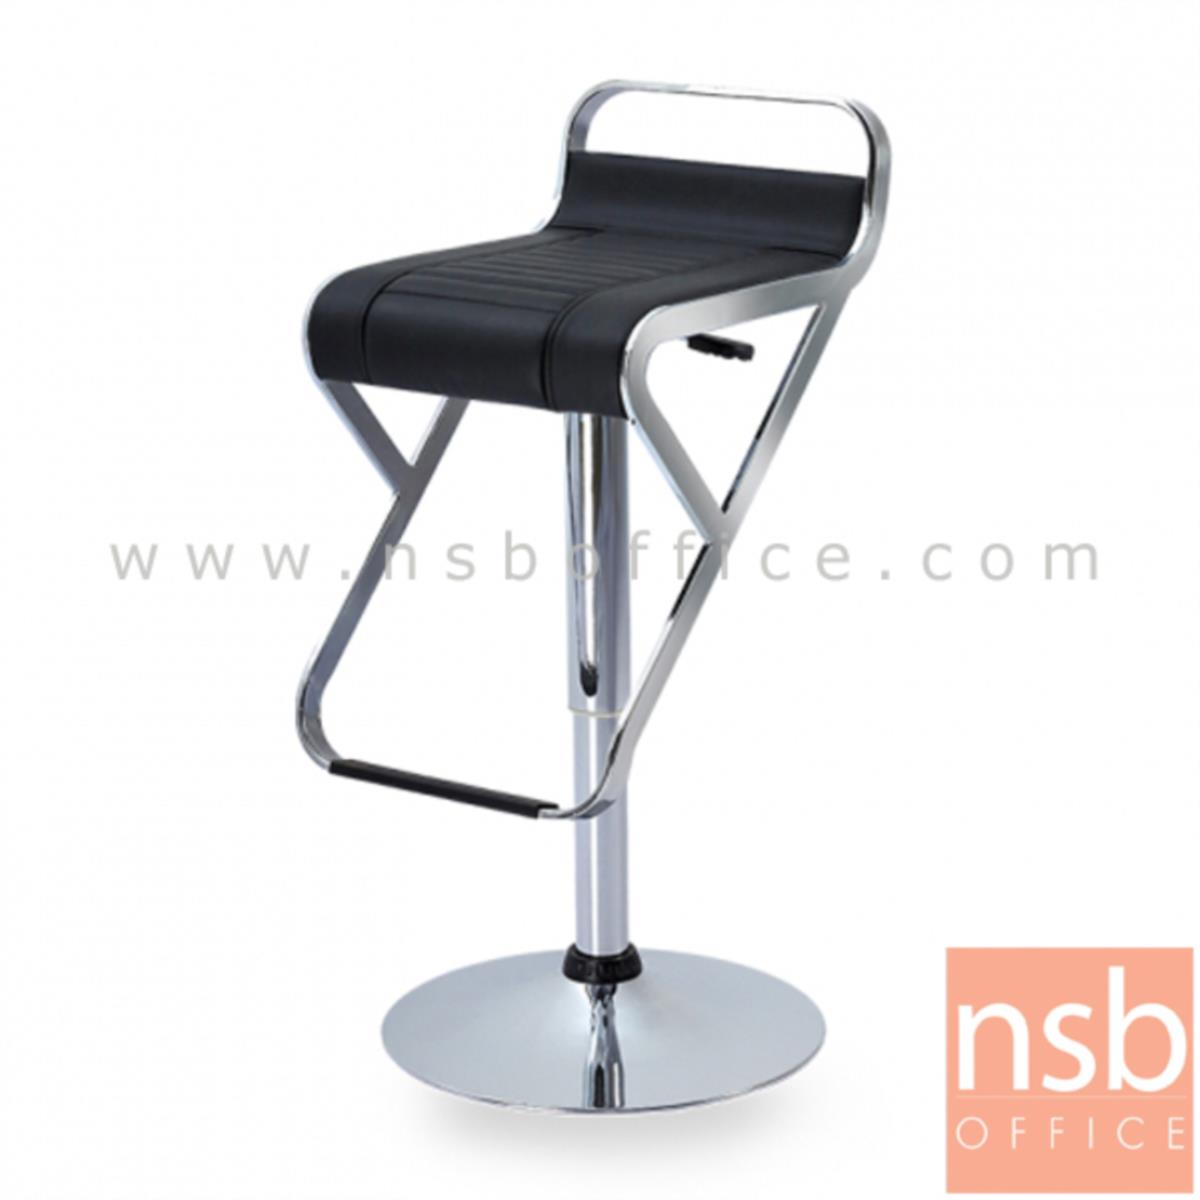 B09A155:เก้าอี้บาร์สูงหนังเทียม รุ่น Janith (เจนิธ) ขนาด 35.8W cm. ขาโครเมี่ยมฐานจานกลม